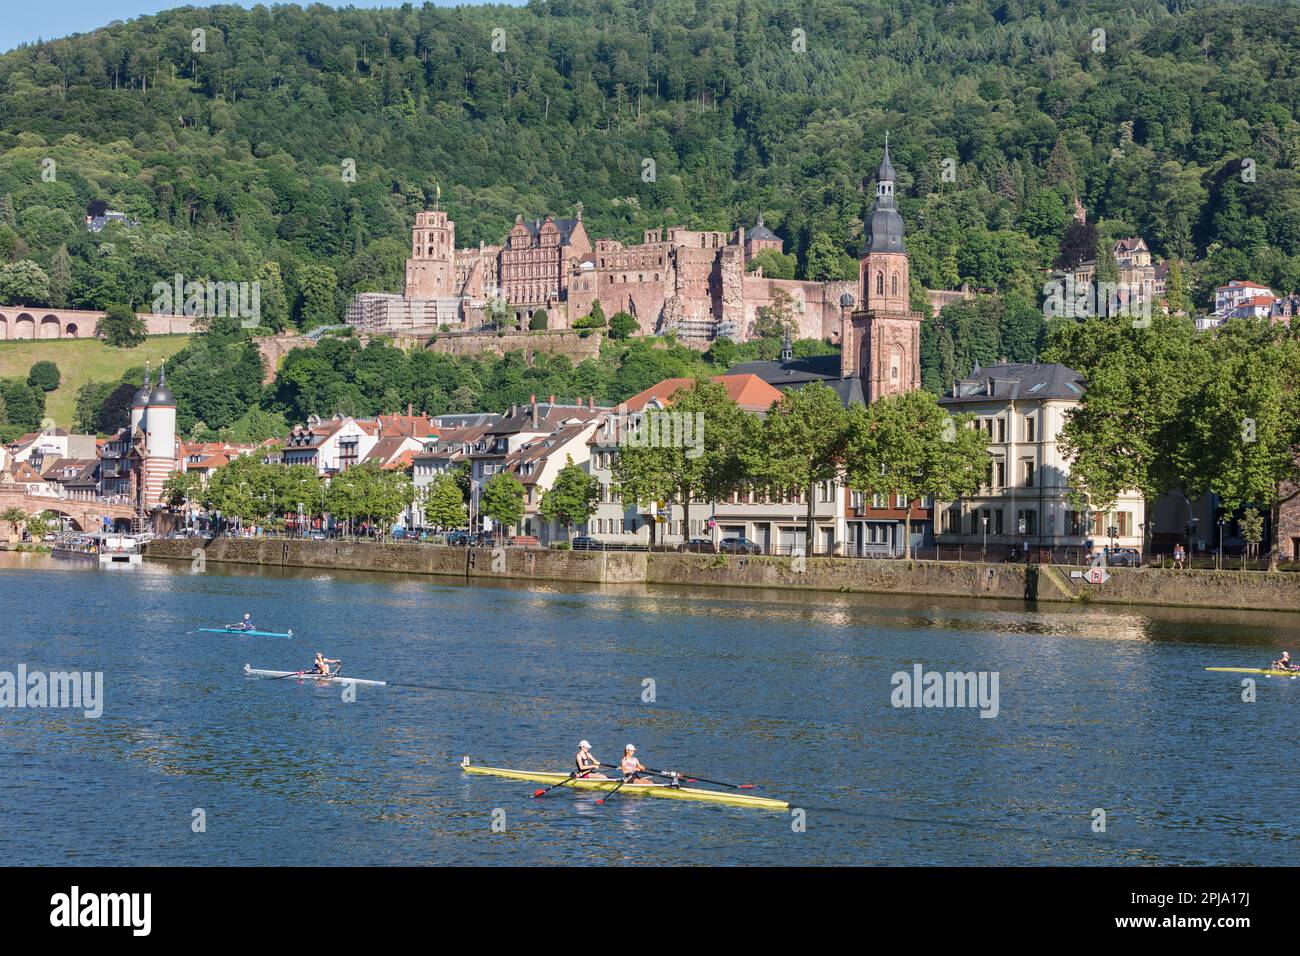 Gara di canottaggio o regata sul fiume Neckar, sotto lo storico castello rinascimentale di Heidelberg, sulle colline di Konigsthul e nella città vecchia. Heidelberg. Foto Stock